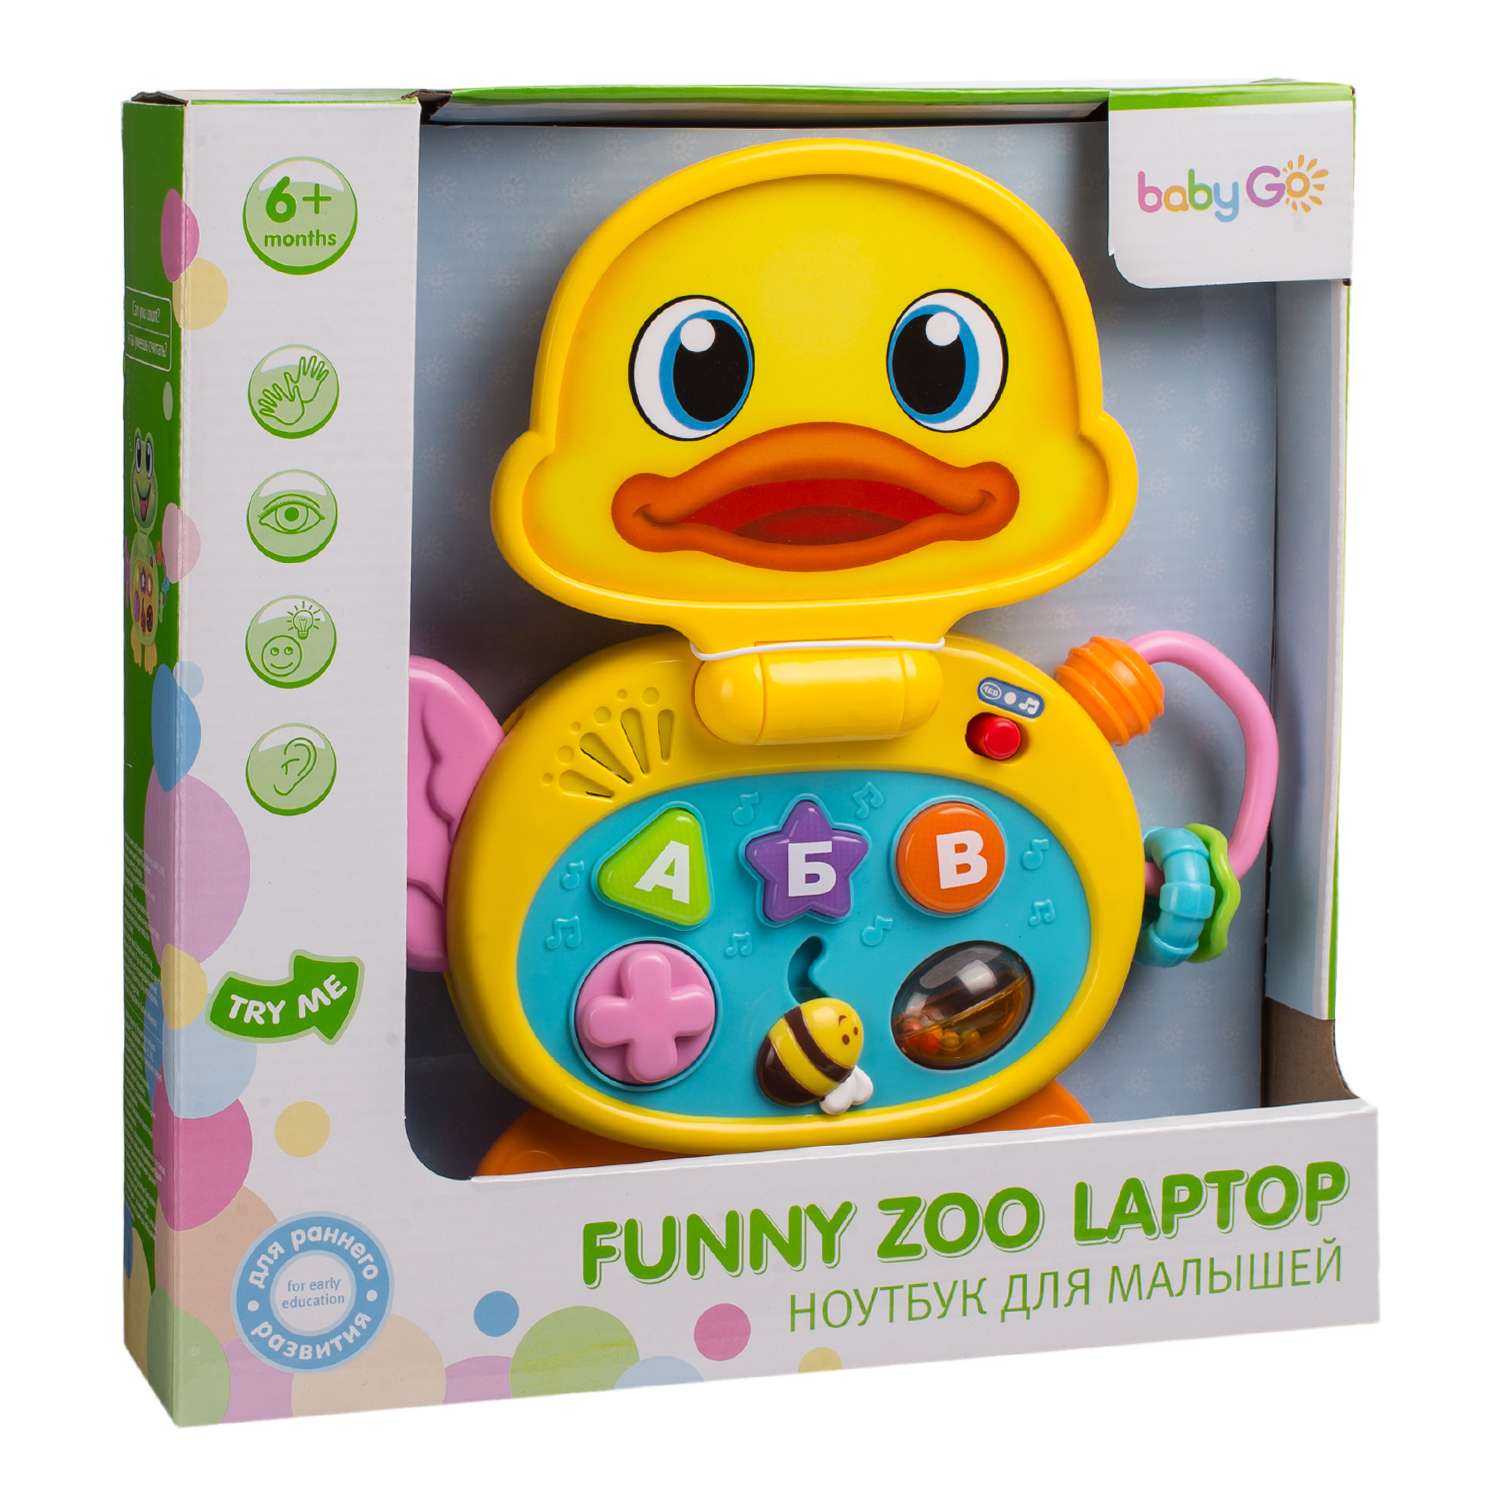 Игрушка BabyGo ноутбук для малышей - фото 2